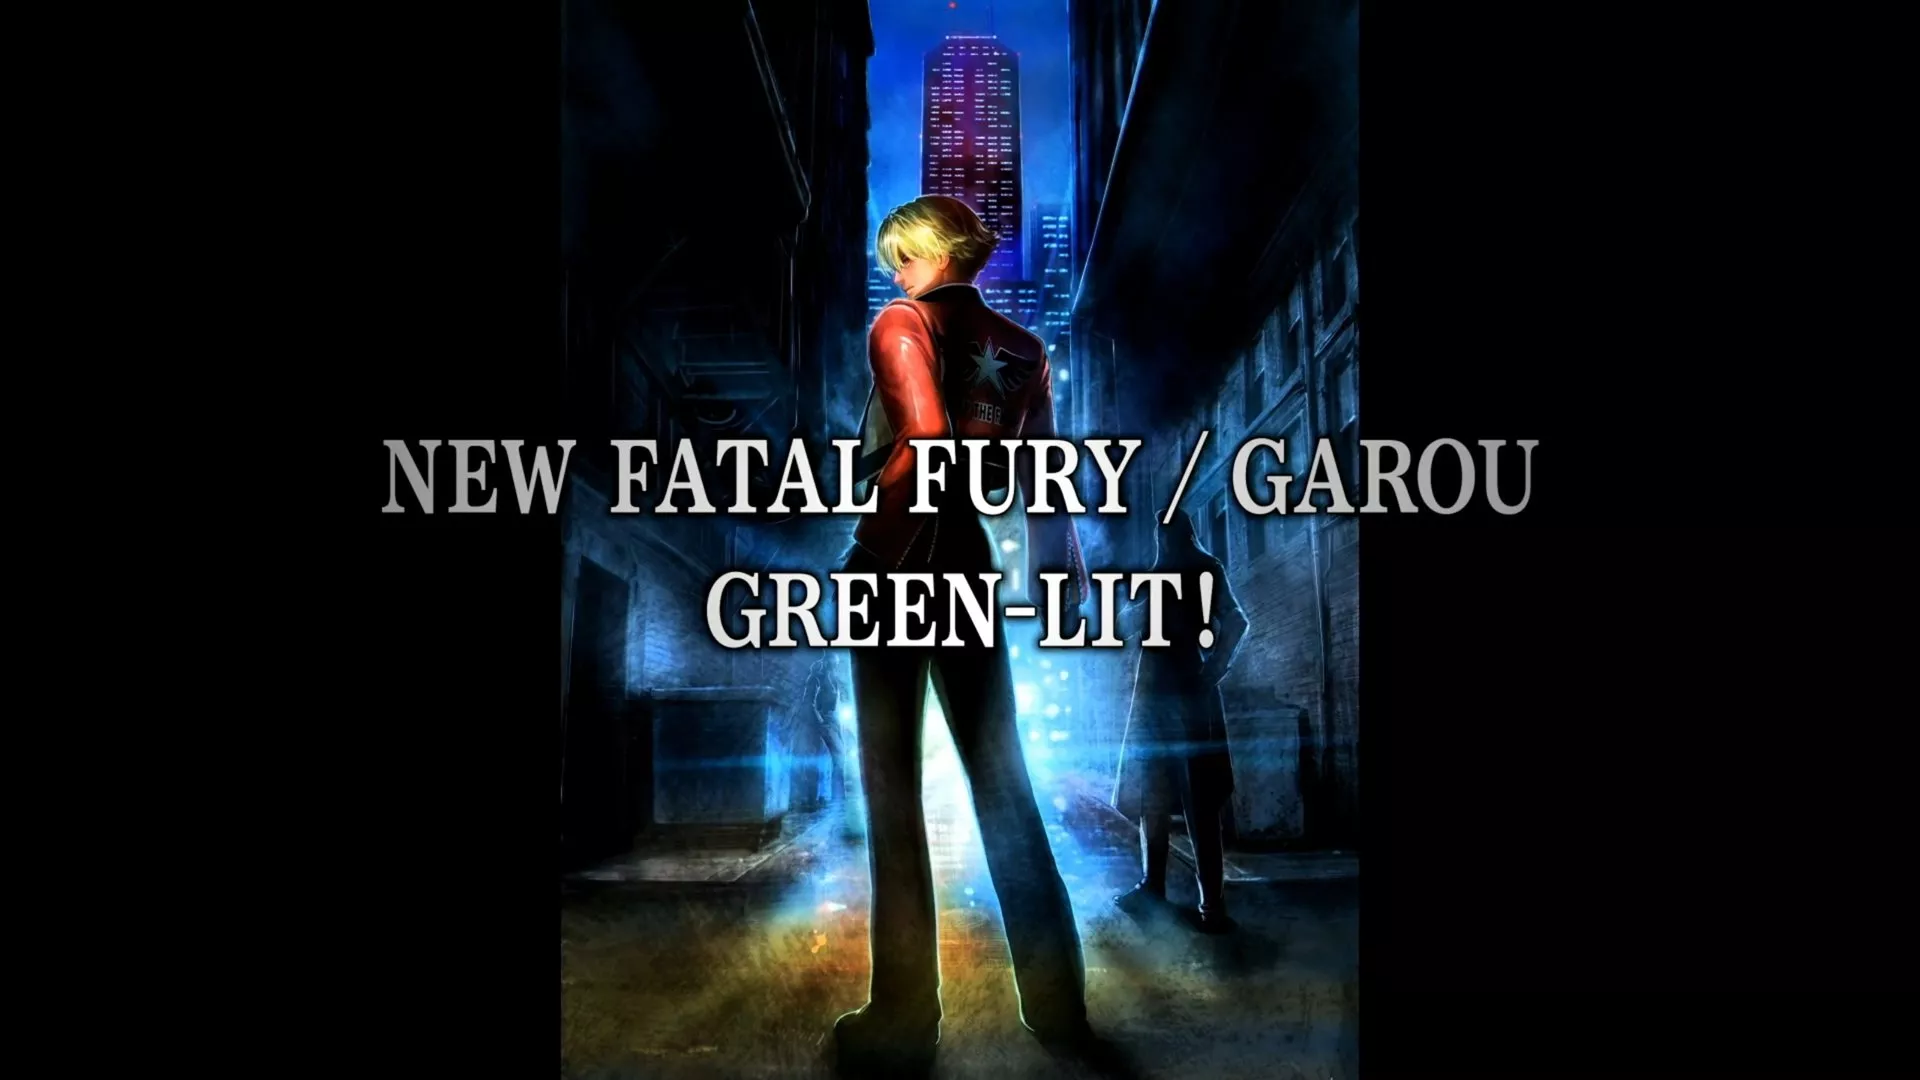 Ein neues Fatal Fury/Garou befindet sich in Entwicklung Heropic